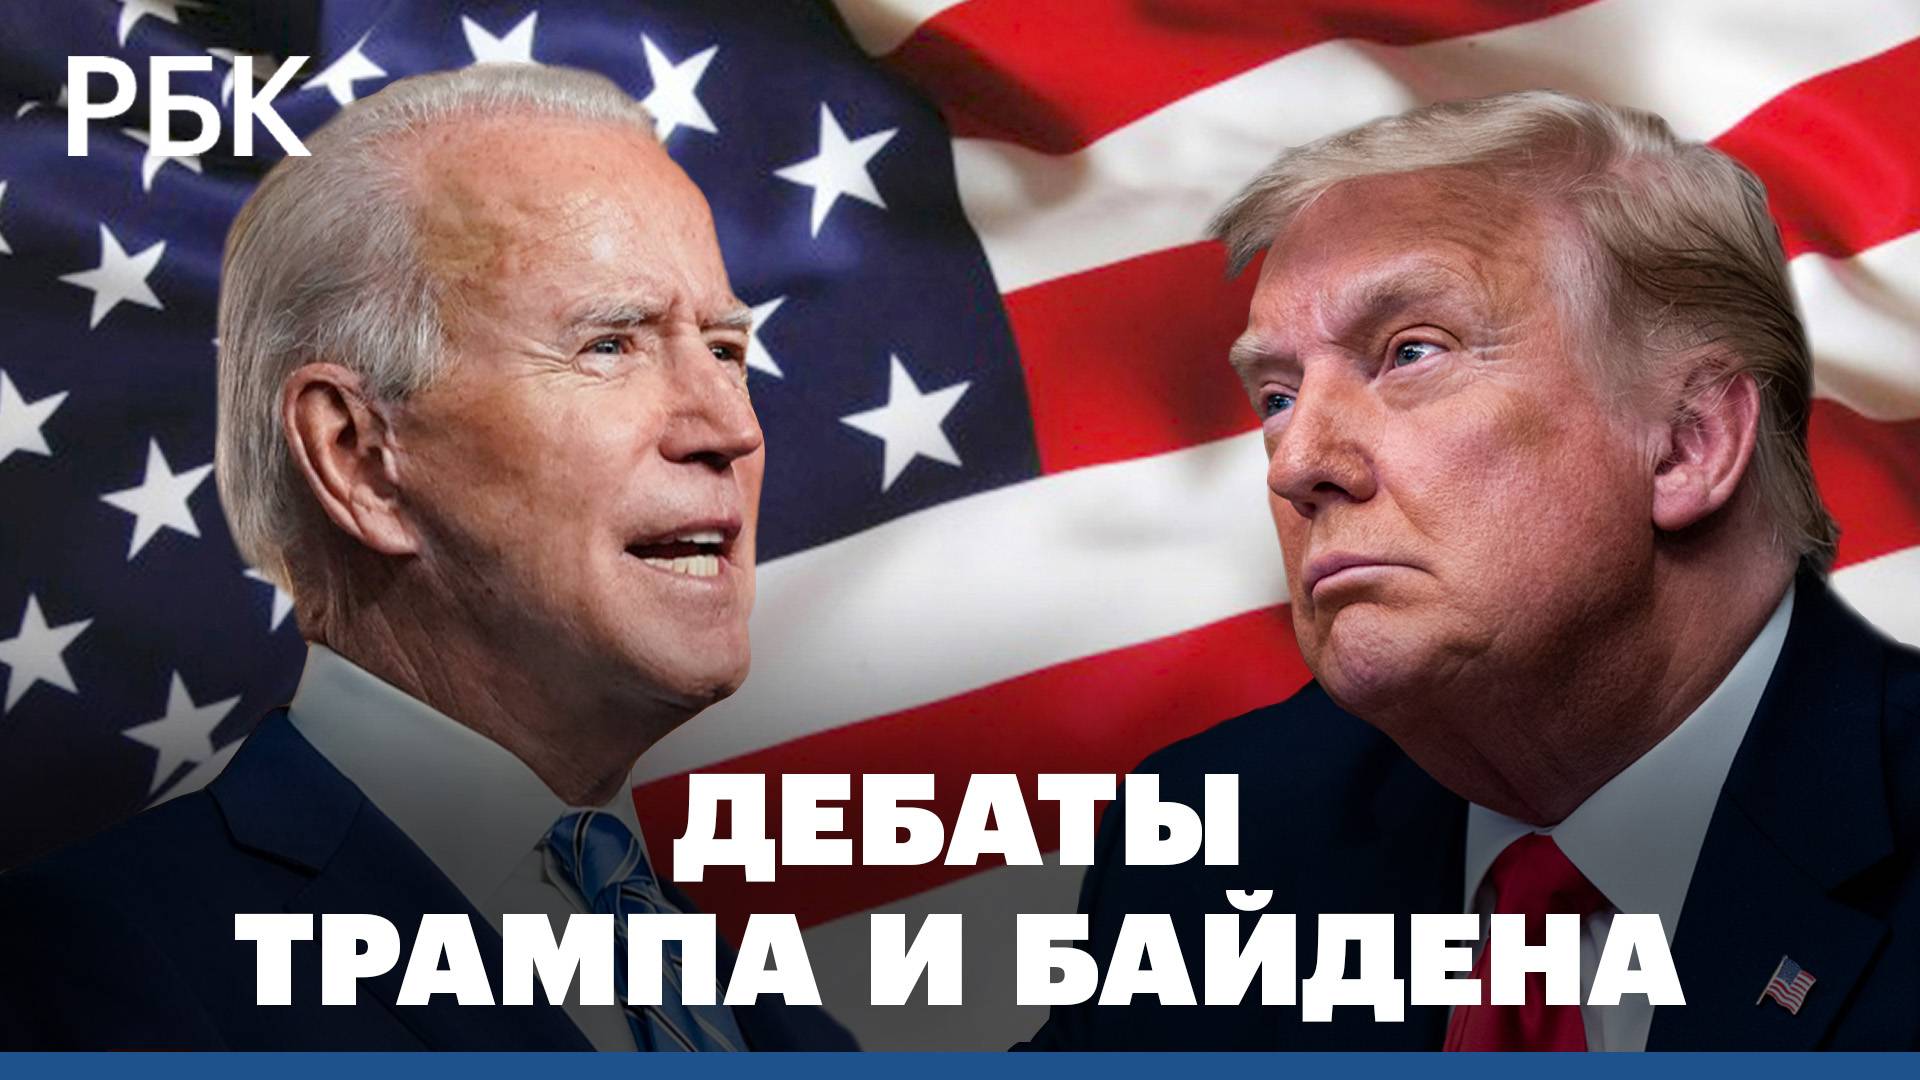 Дебаты Байдена и Трампа: главное за 4 минуты на русском языке